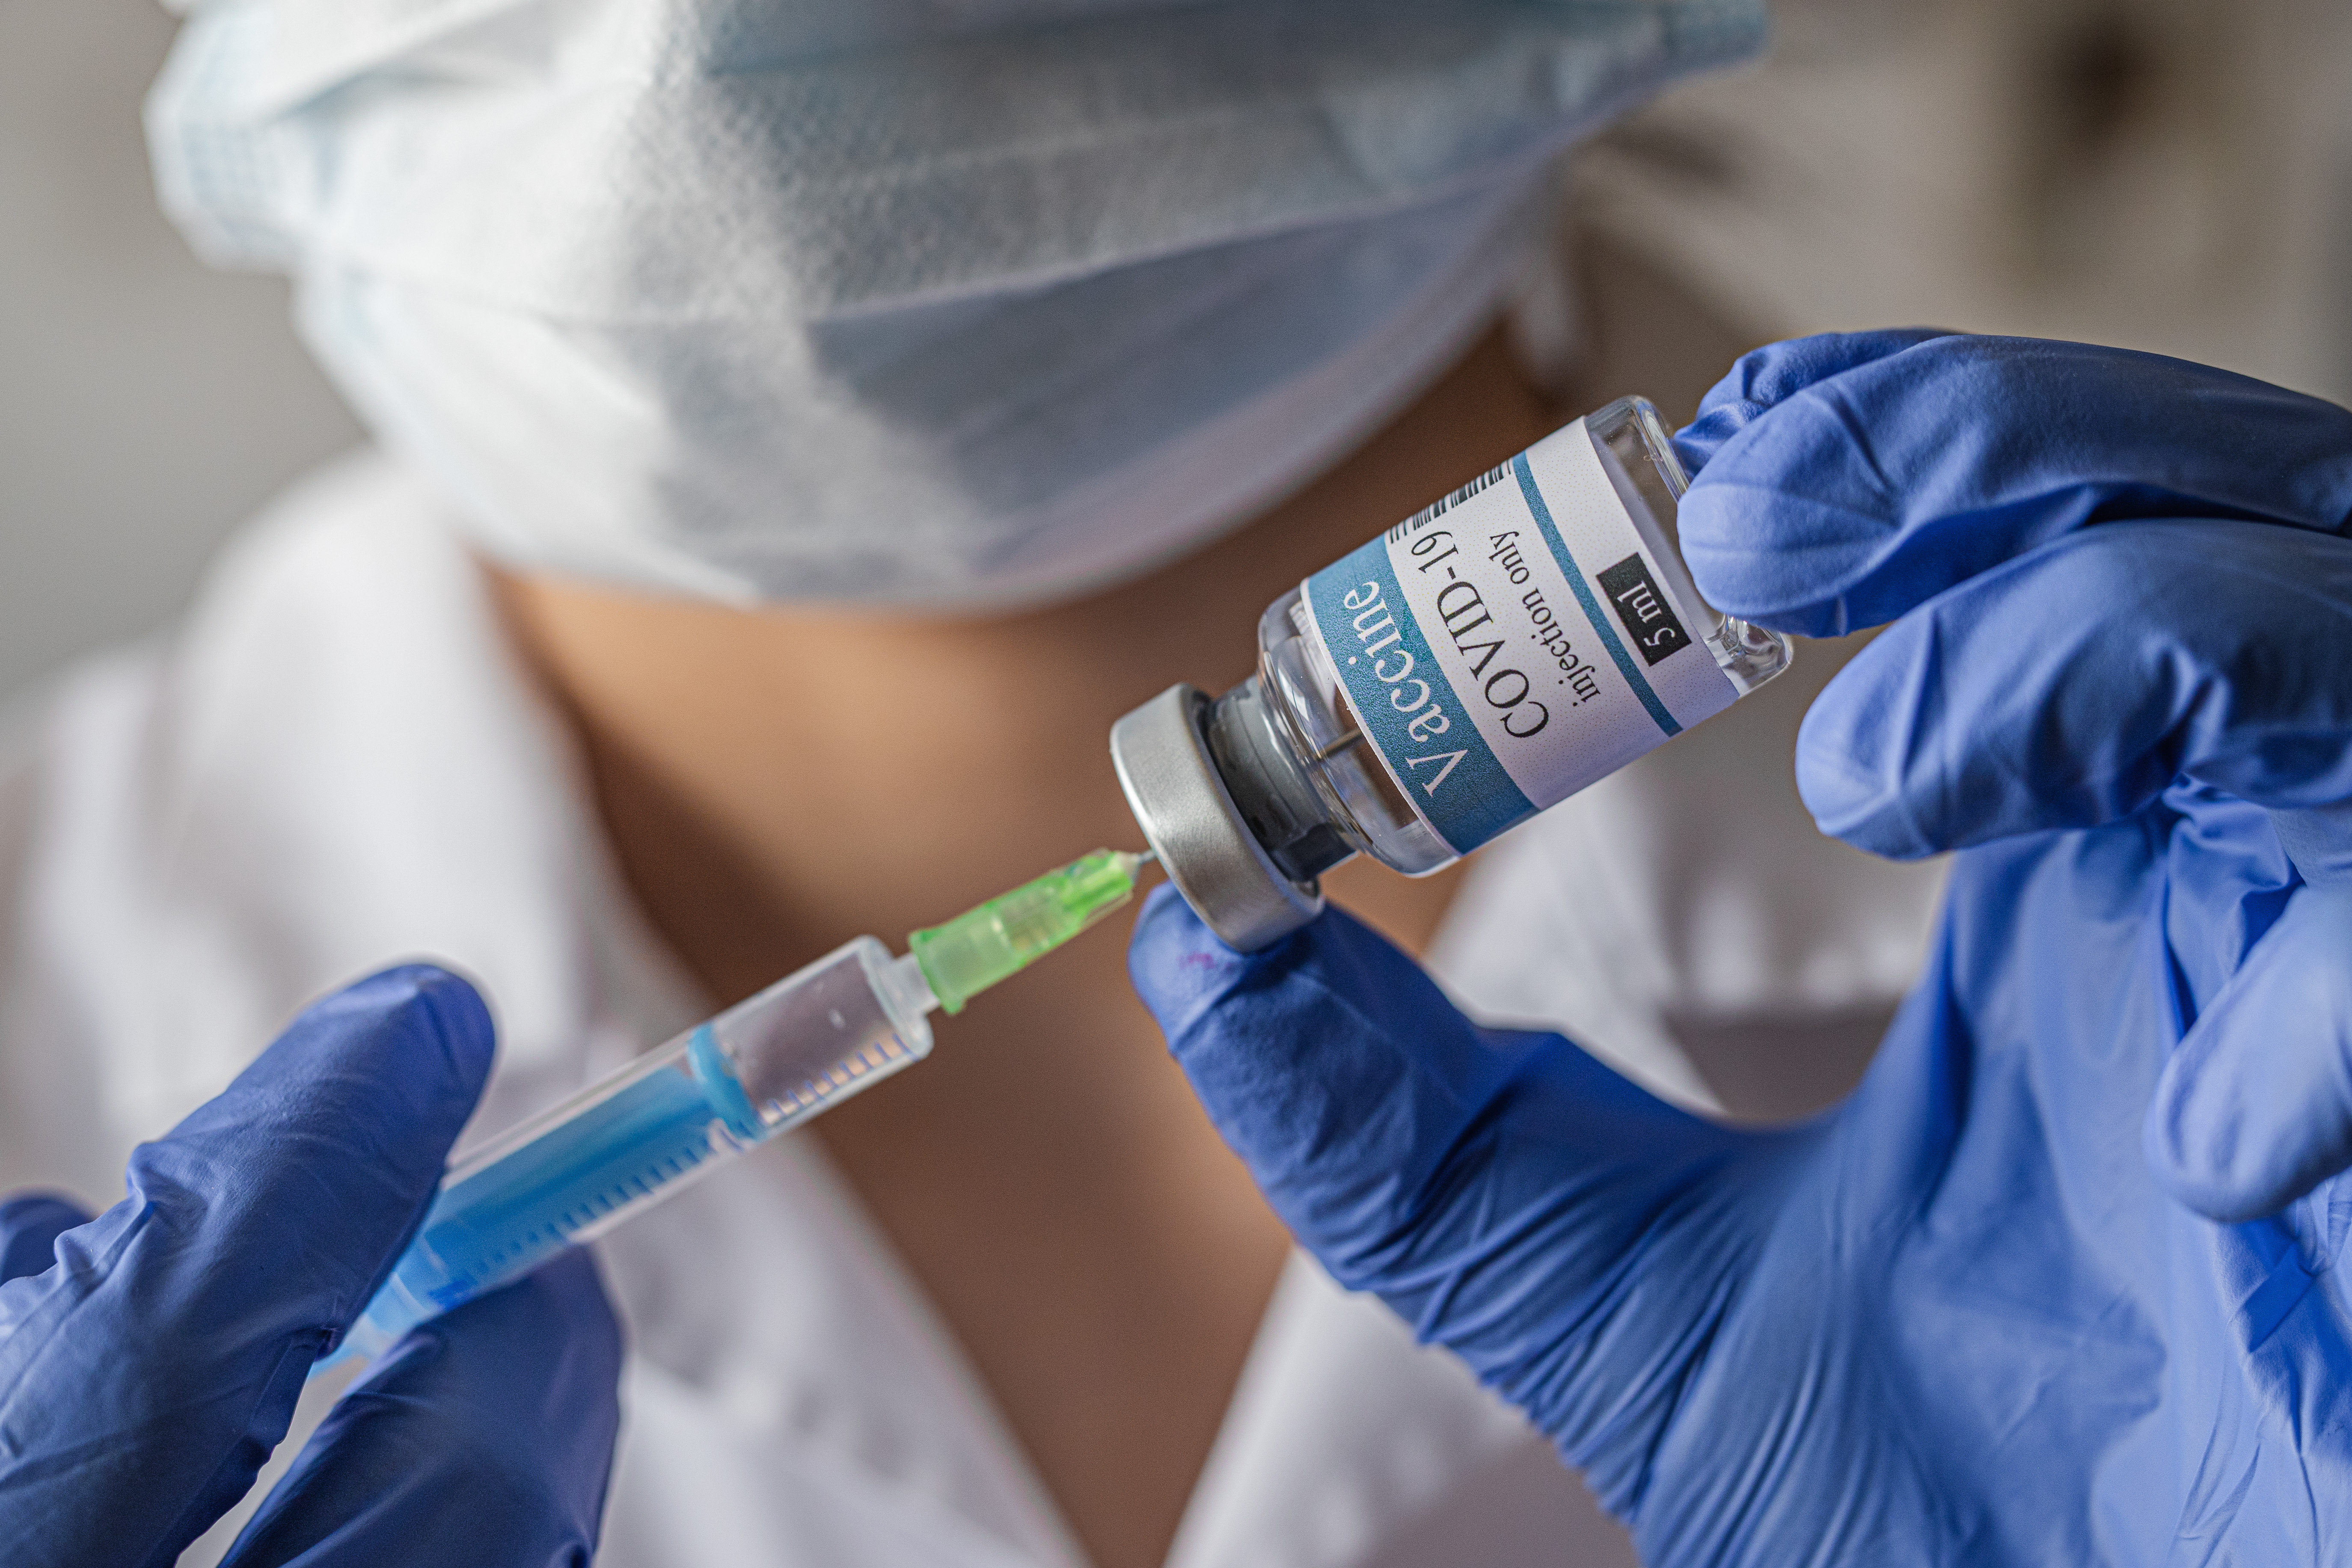 Le taux de réaction allergique lié à la vaccination anti-COVID est comparable à celui observé avec la prise d’antibiotiques par exemple (Visuel Adobe Stock 331786956).